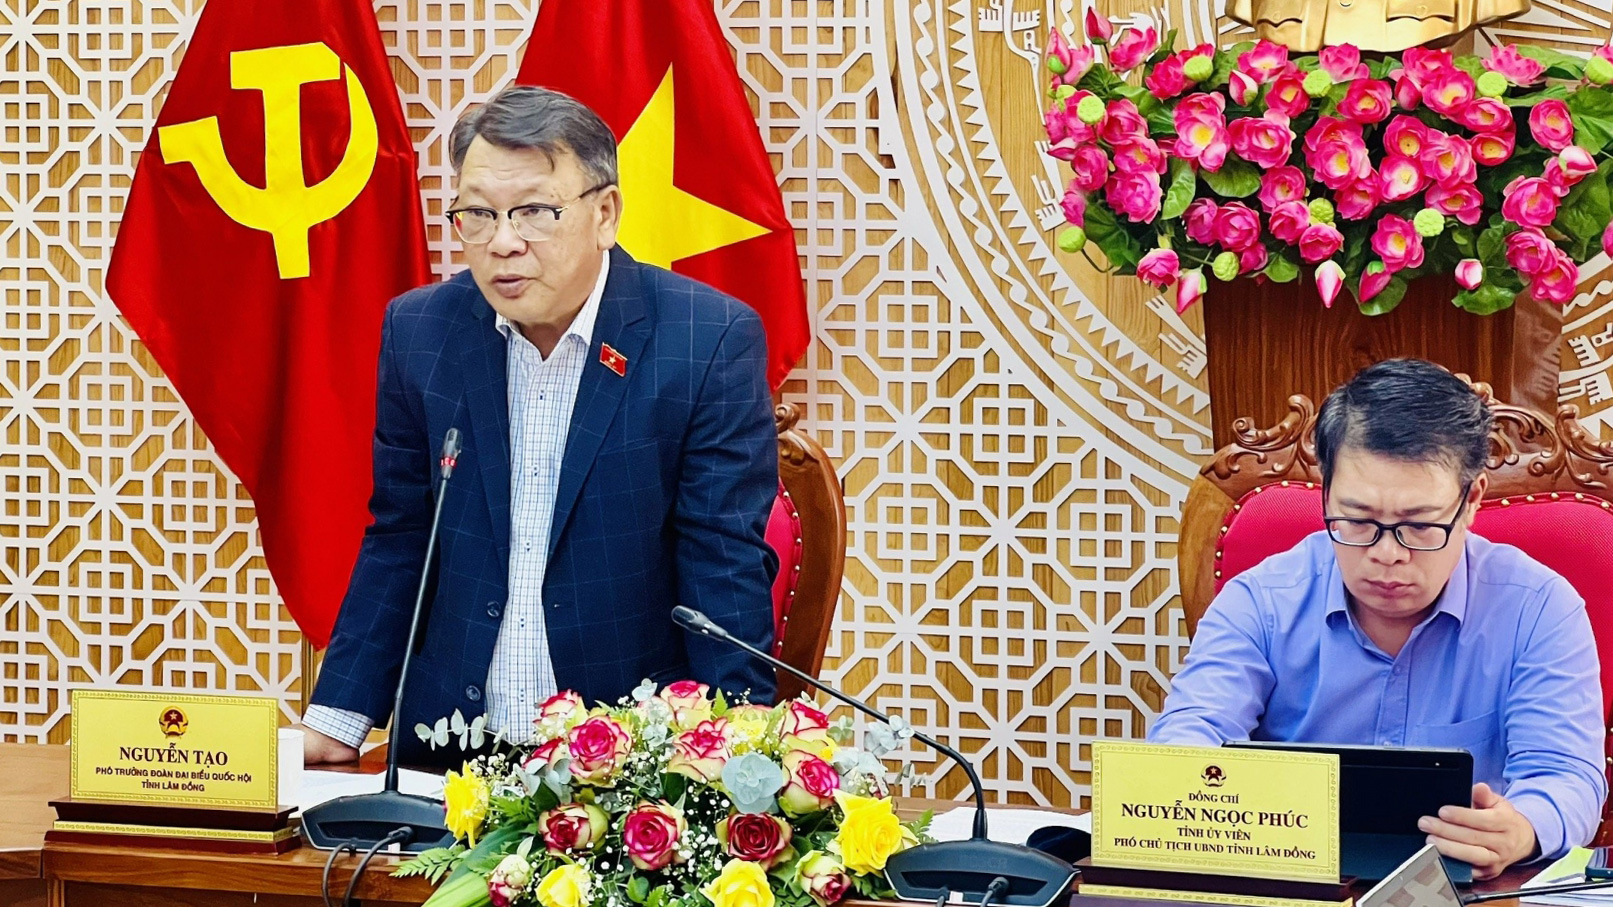 Đồng chí Nguyễn Tạo - Phó Trưởng Đoàn ĐBQH Lâm Đồng kết luận buổi giám sát